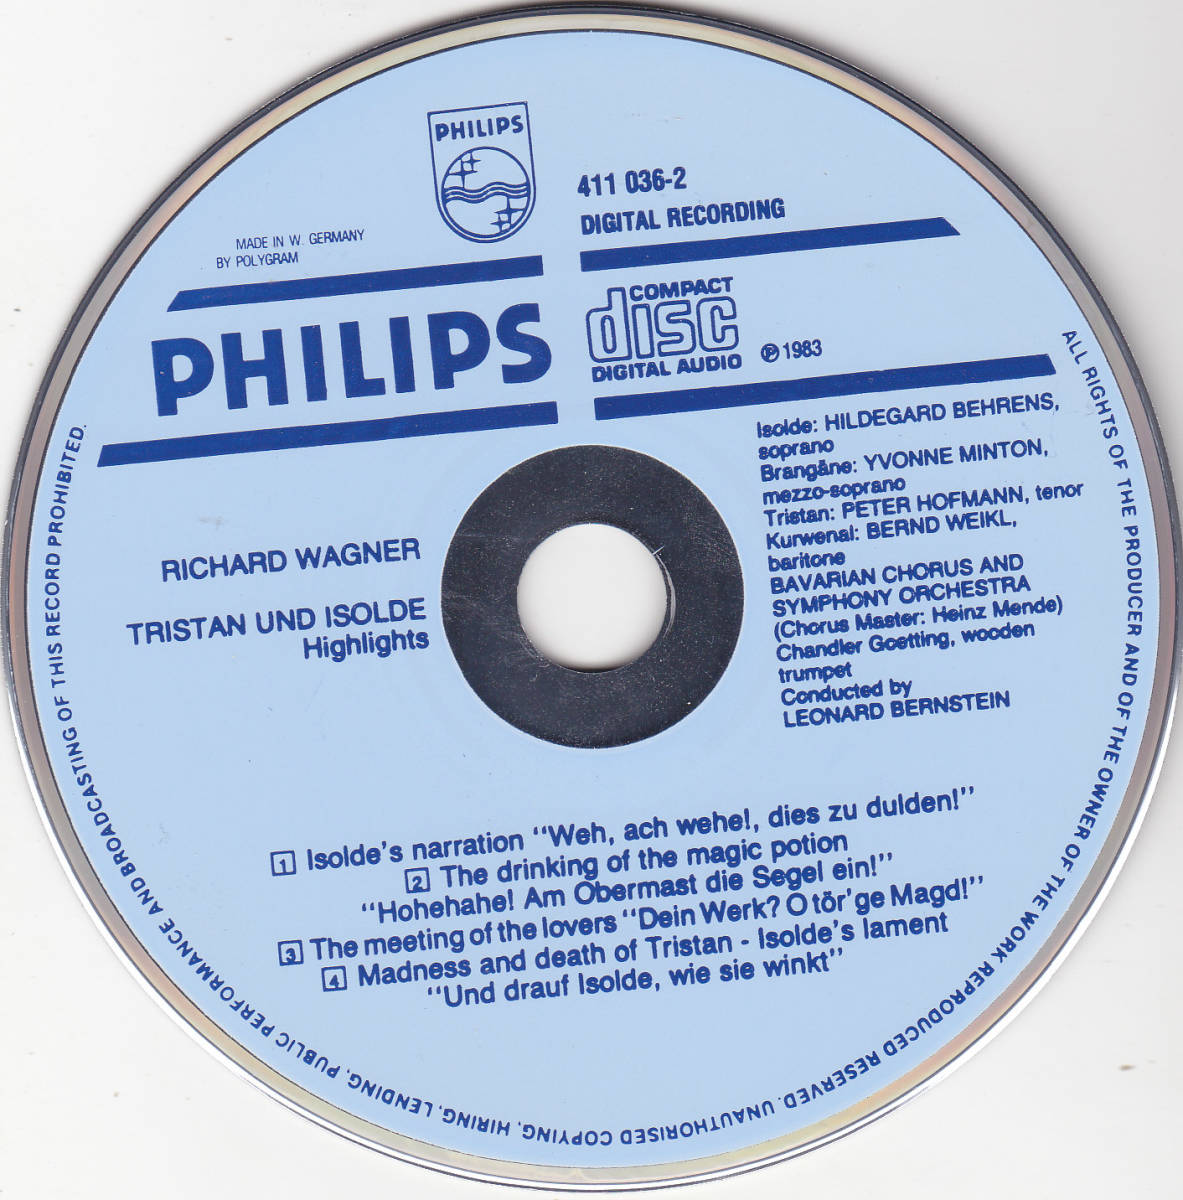 CD バーンスタイン / ワーグナー : トリスタンとイゾルデ ハイライト - 西独盤 PHILIPS 初期 青盤 411 036-2_画像3